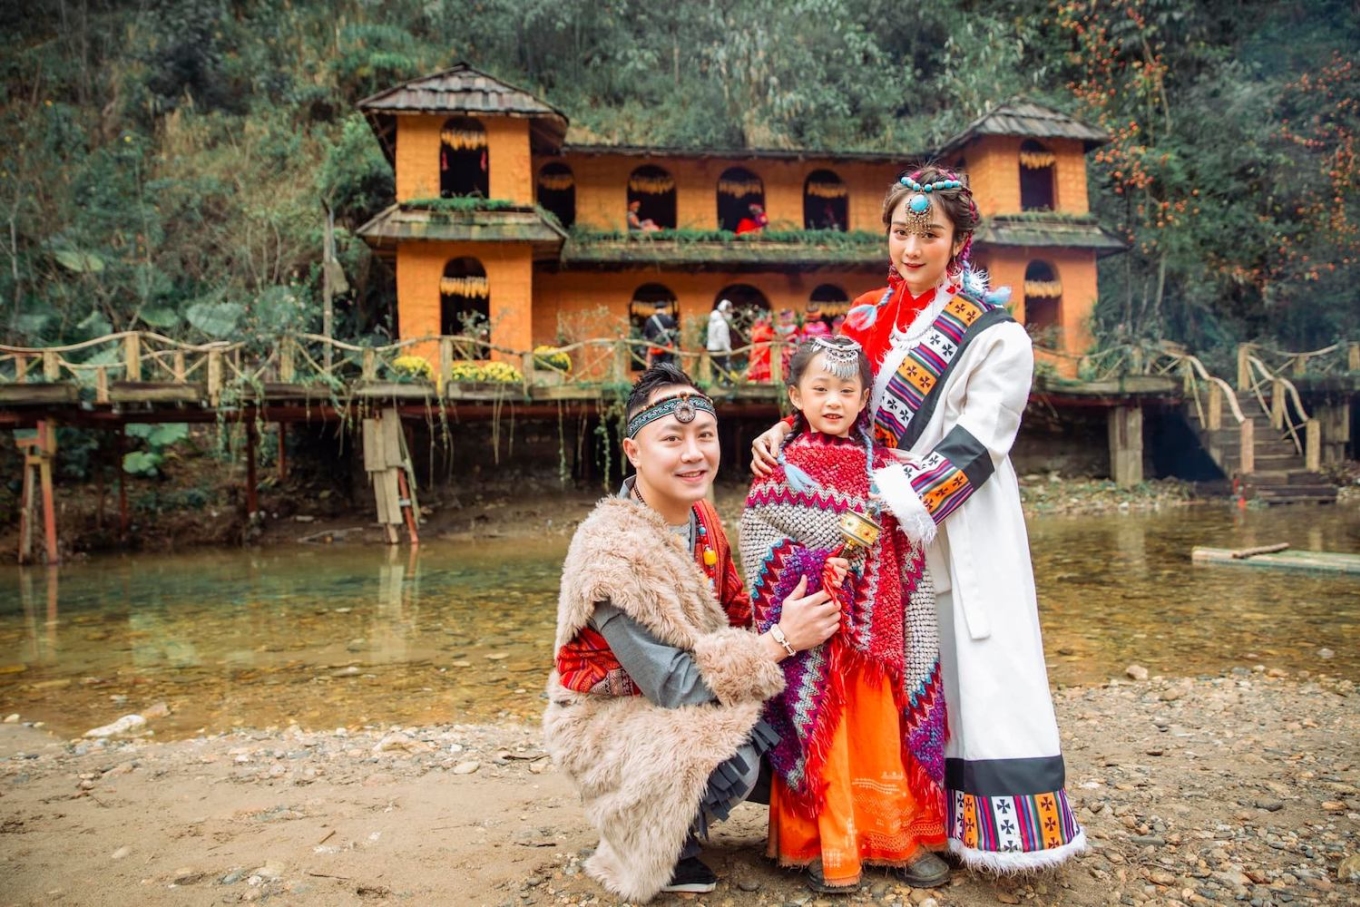 Trào lưu chụp ảnh phong cách Tây Tạng ở Sa Pa: Thử thách khả năng chụp ảnh của bạn với trào lưu chụp ảnh phong cách Tây Tạng ở Sa Pa. Tạo nên những bức ảnh độc đáo với cảnh quan tuyệt đẹp, thời trang phù hợp với trang phục truyền thống của người H\'Mông. Hãy mang lại cho mình những trải nghiệm mới lạ và độc đáo tại Sa Pa.